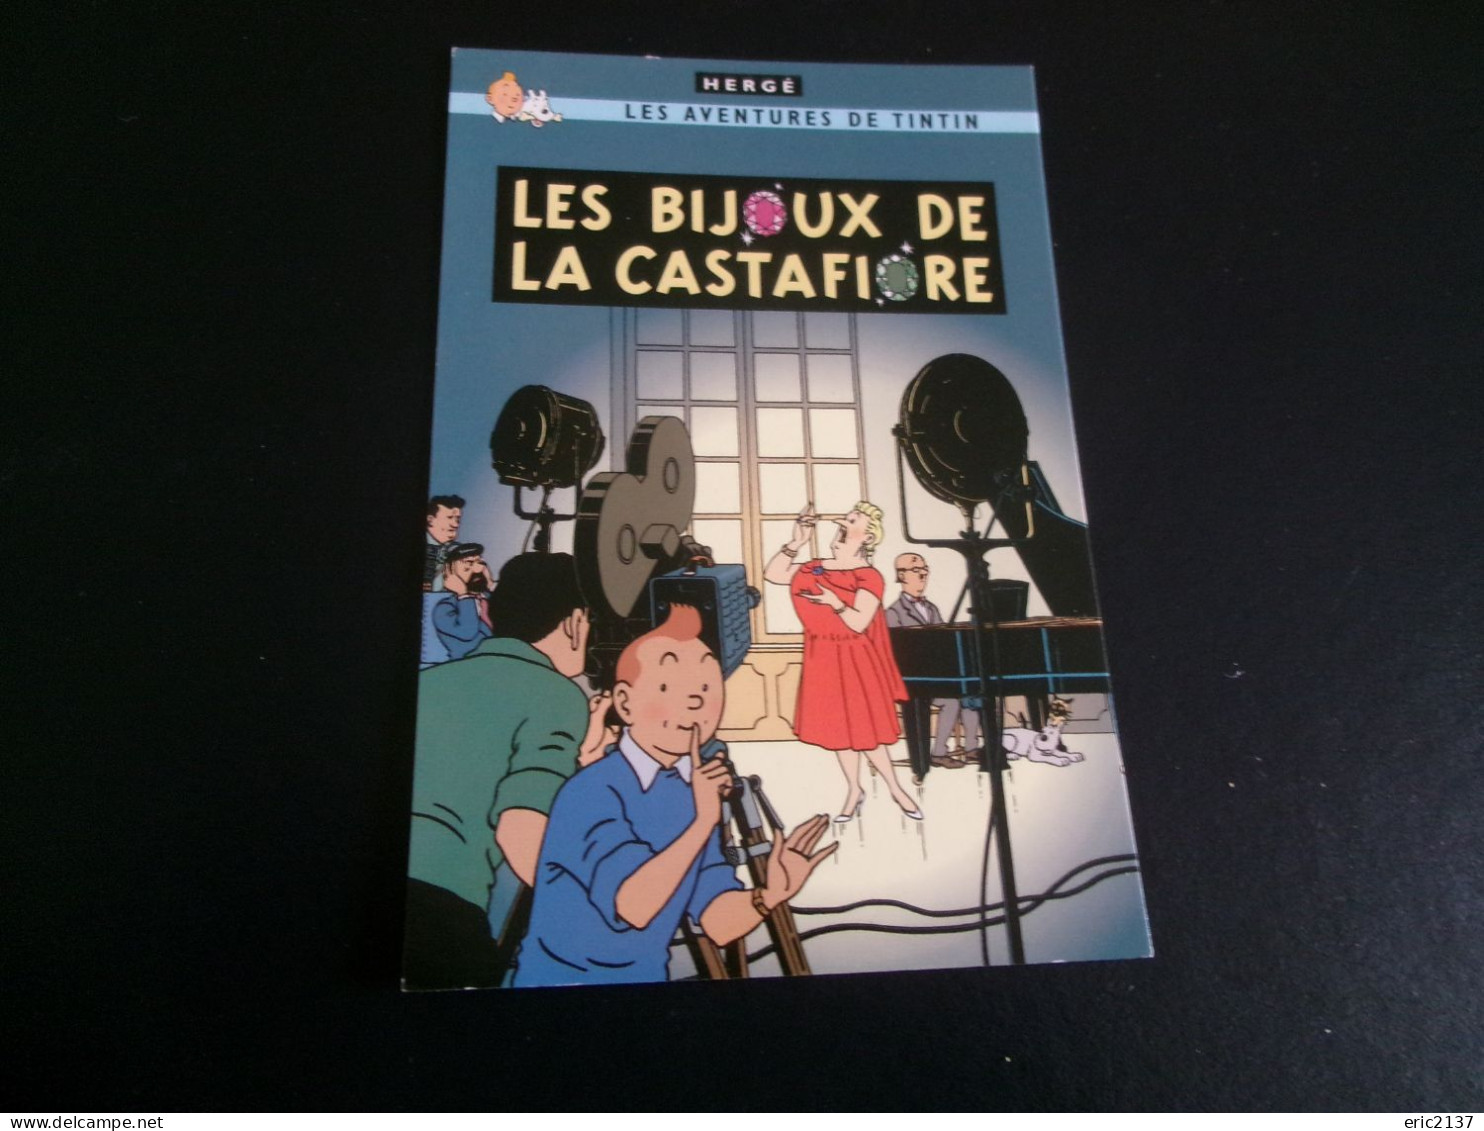 BELLE ILLUSTRATION.."LES AVENTURES DE TINTIN..LES BIJOUX DE LA CASTAFIORE"...par HERGE - Comics